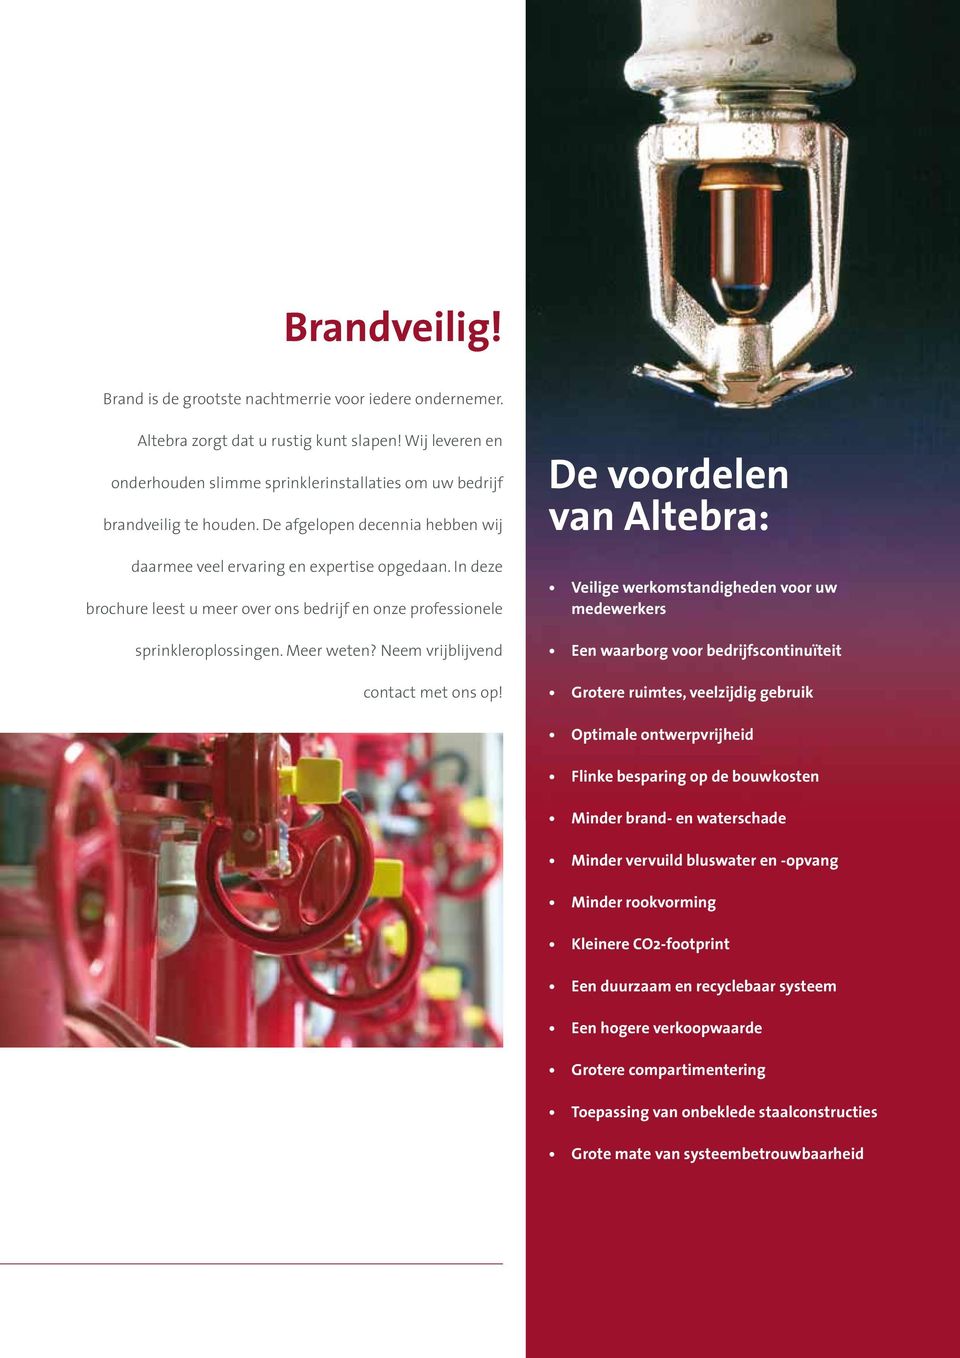 In deze brochure leest u meer over ons bedrijf en onze professionele sprinkleroplossingen. Meer weten? Neem vrijblijvend contact met ons op!